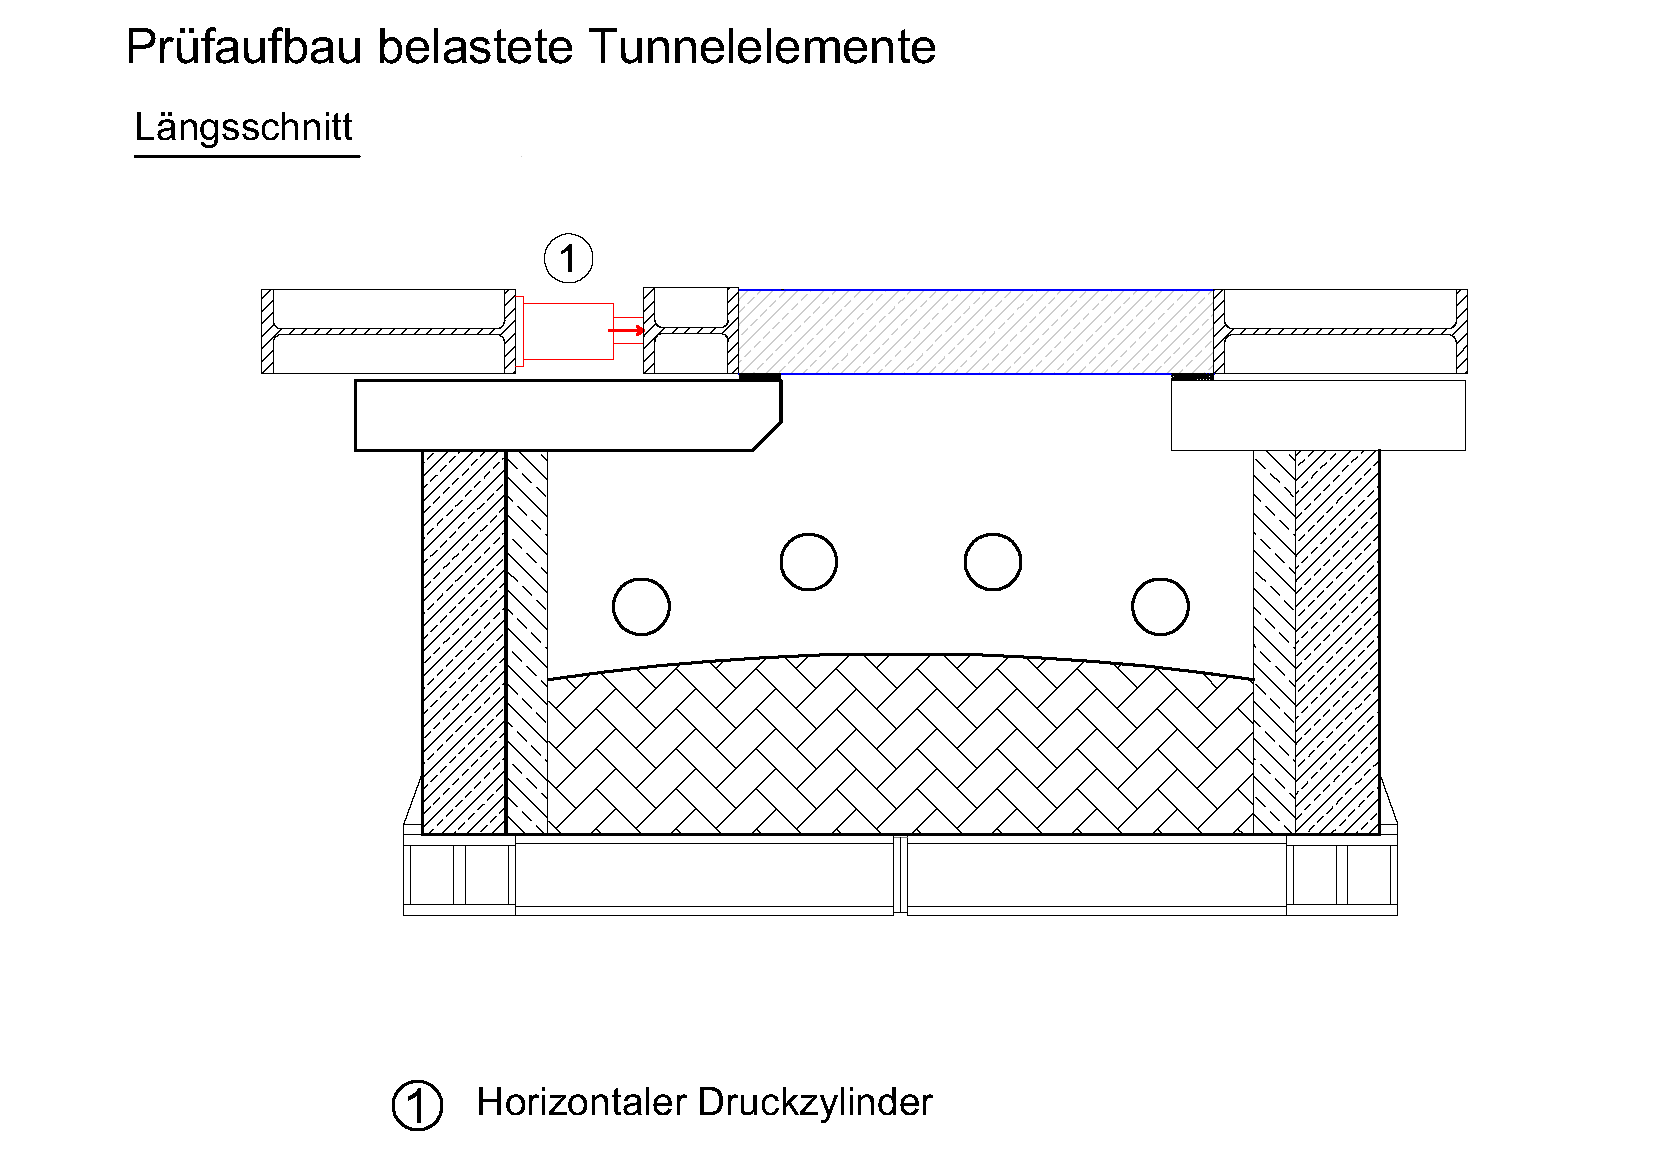 Längsschnitt des Prüfaufbaus belasteter Tunnelelement zum Einbau im Prüfofen mit horizontaler Belastung